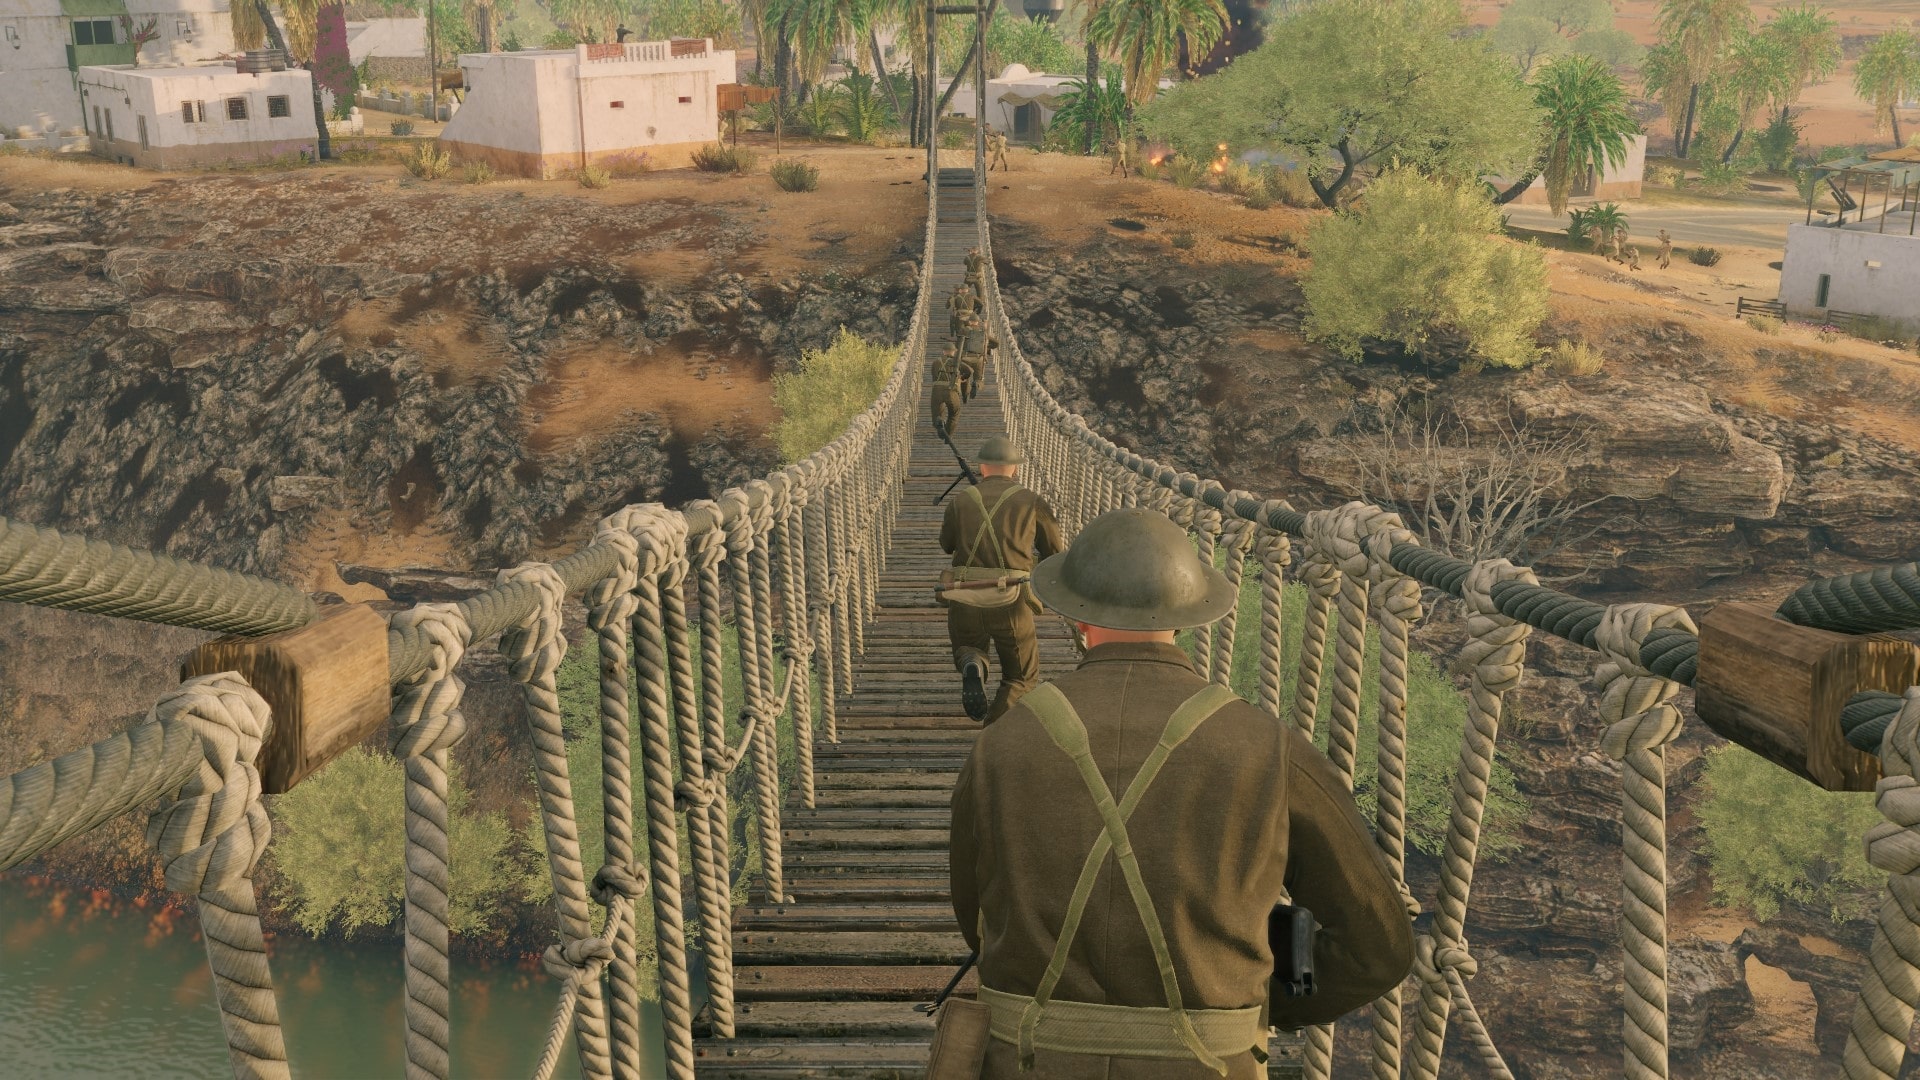 Baixe Enlisted e mergulhe na Segunda Guerra Mundial - Xbox Wire em